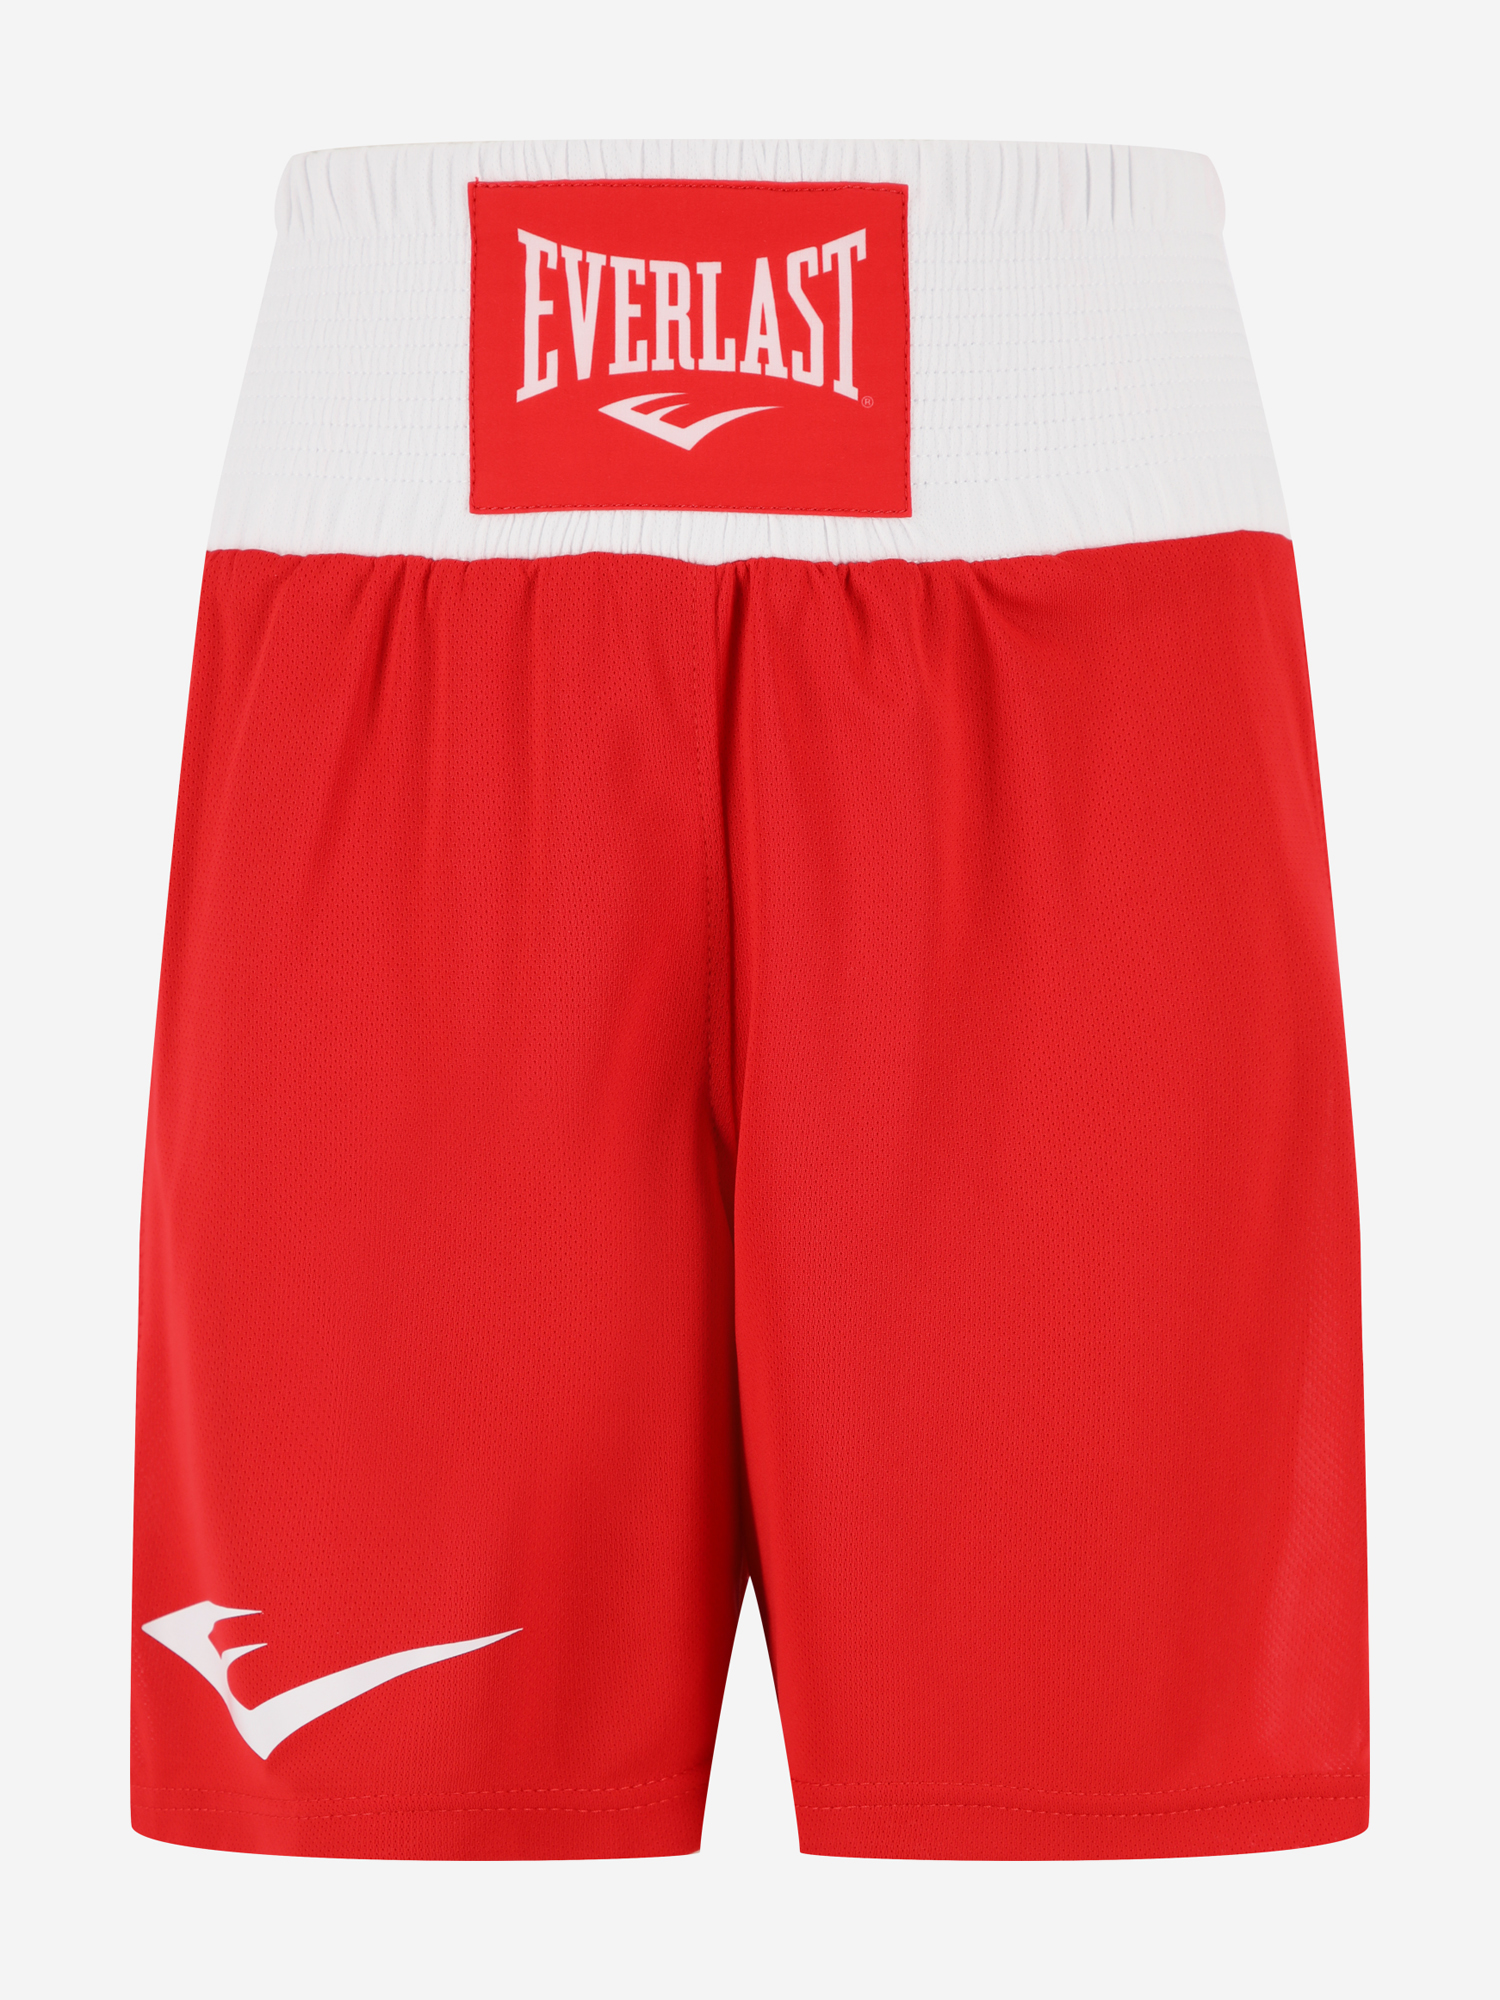 Шорты для бокса Everlast Shorts Elite, Красный шорты для бокса детские everlast elite синий